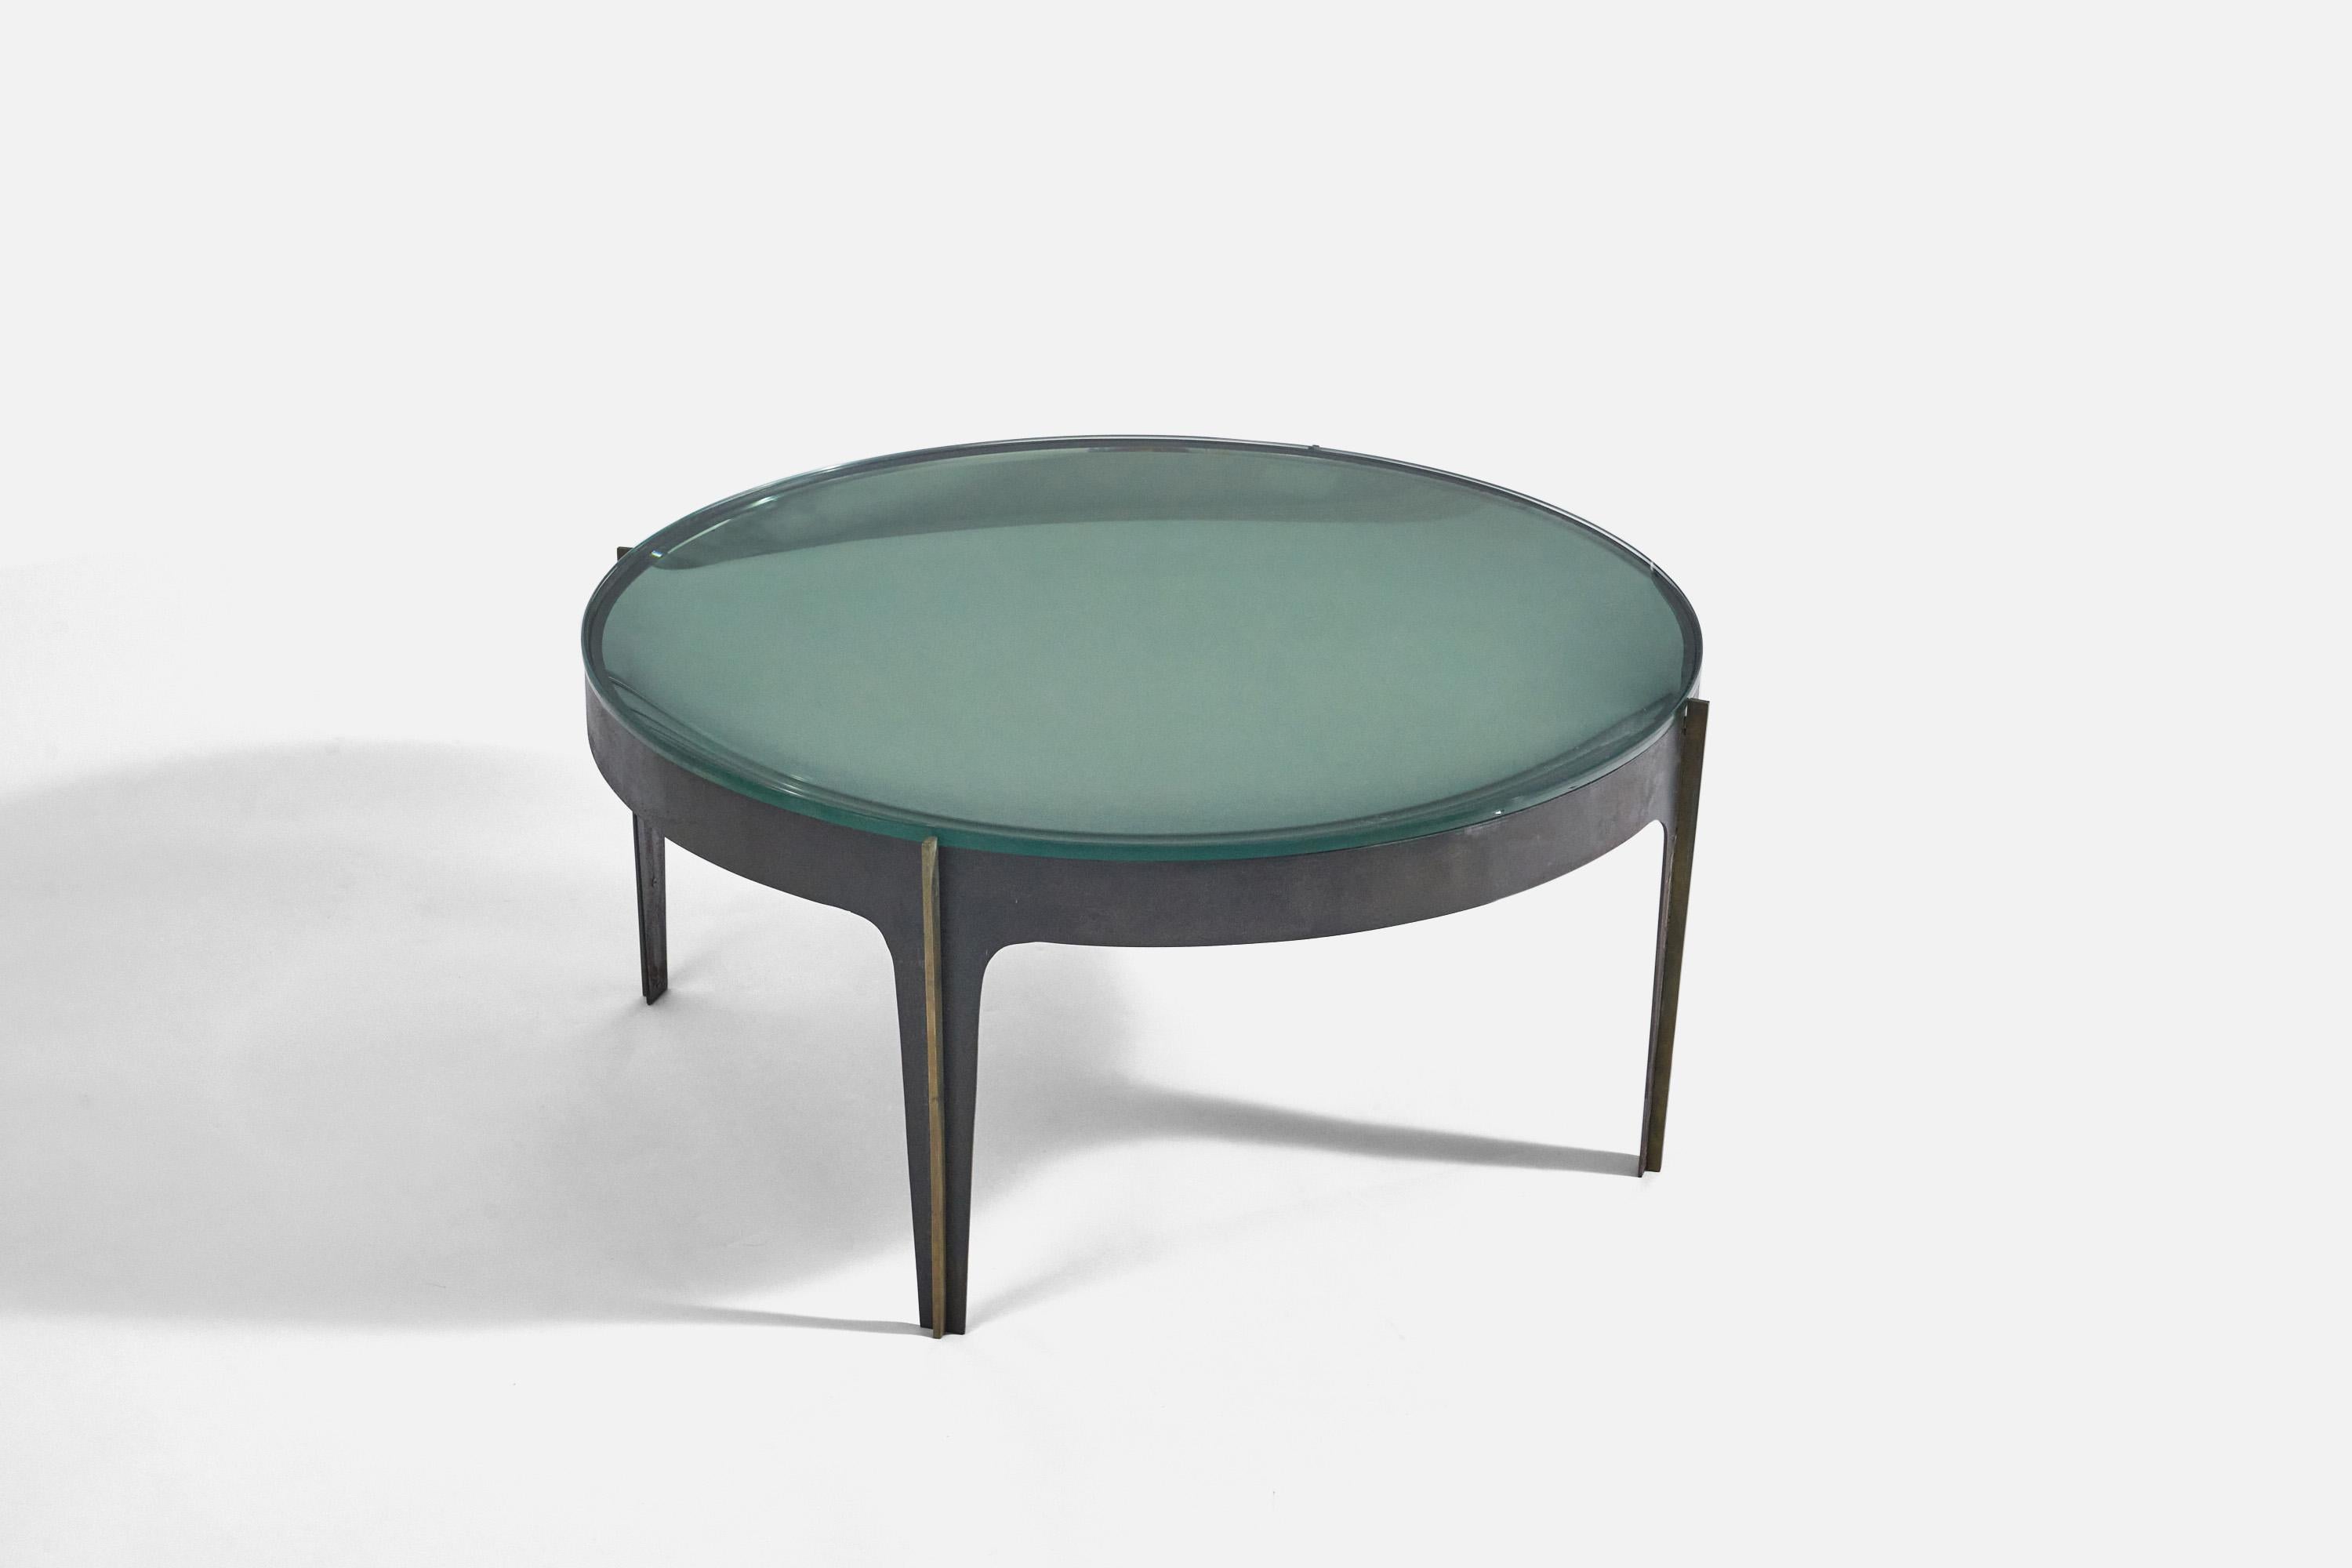 Table basse en verre convexe vert, métal et laiton, modèle 1774, conçue par Max Ingrand et produite par Fontana Arte, Italie, 1958.